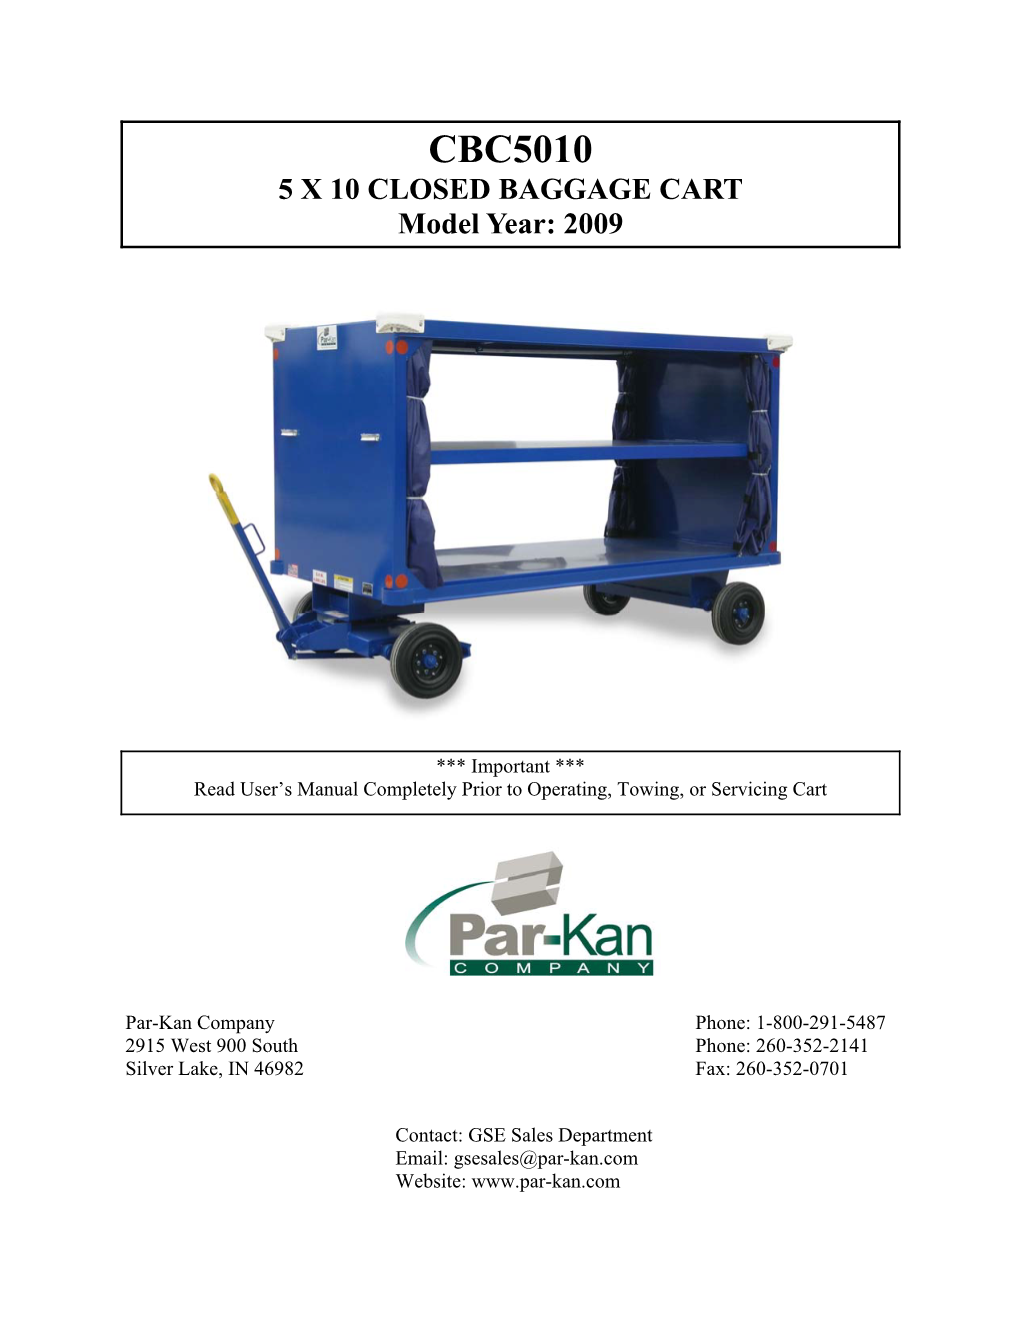 Par-Kan CBC5010 Baggage Cart Manual